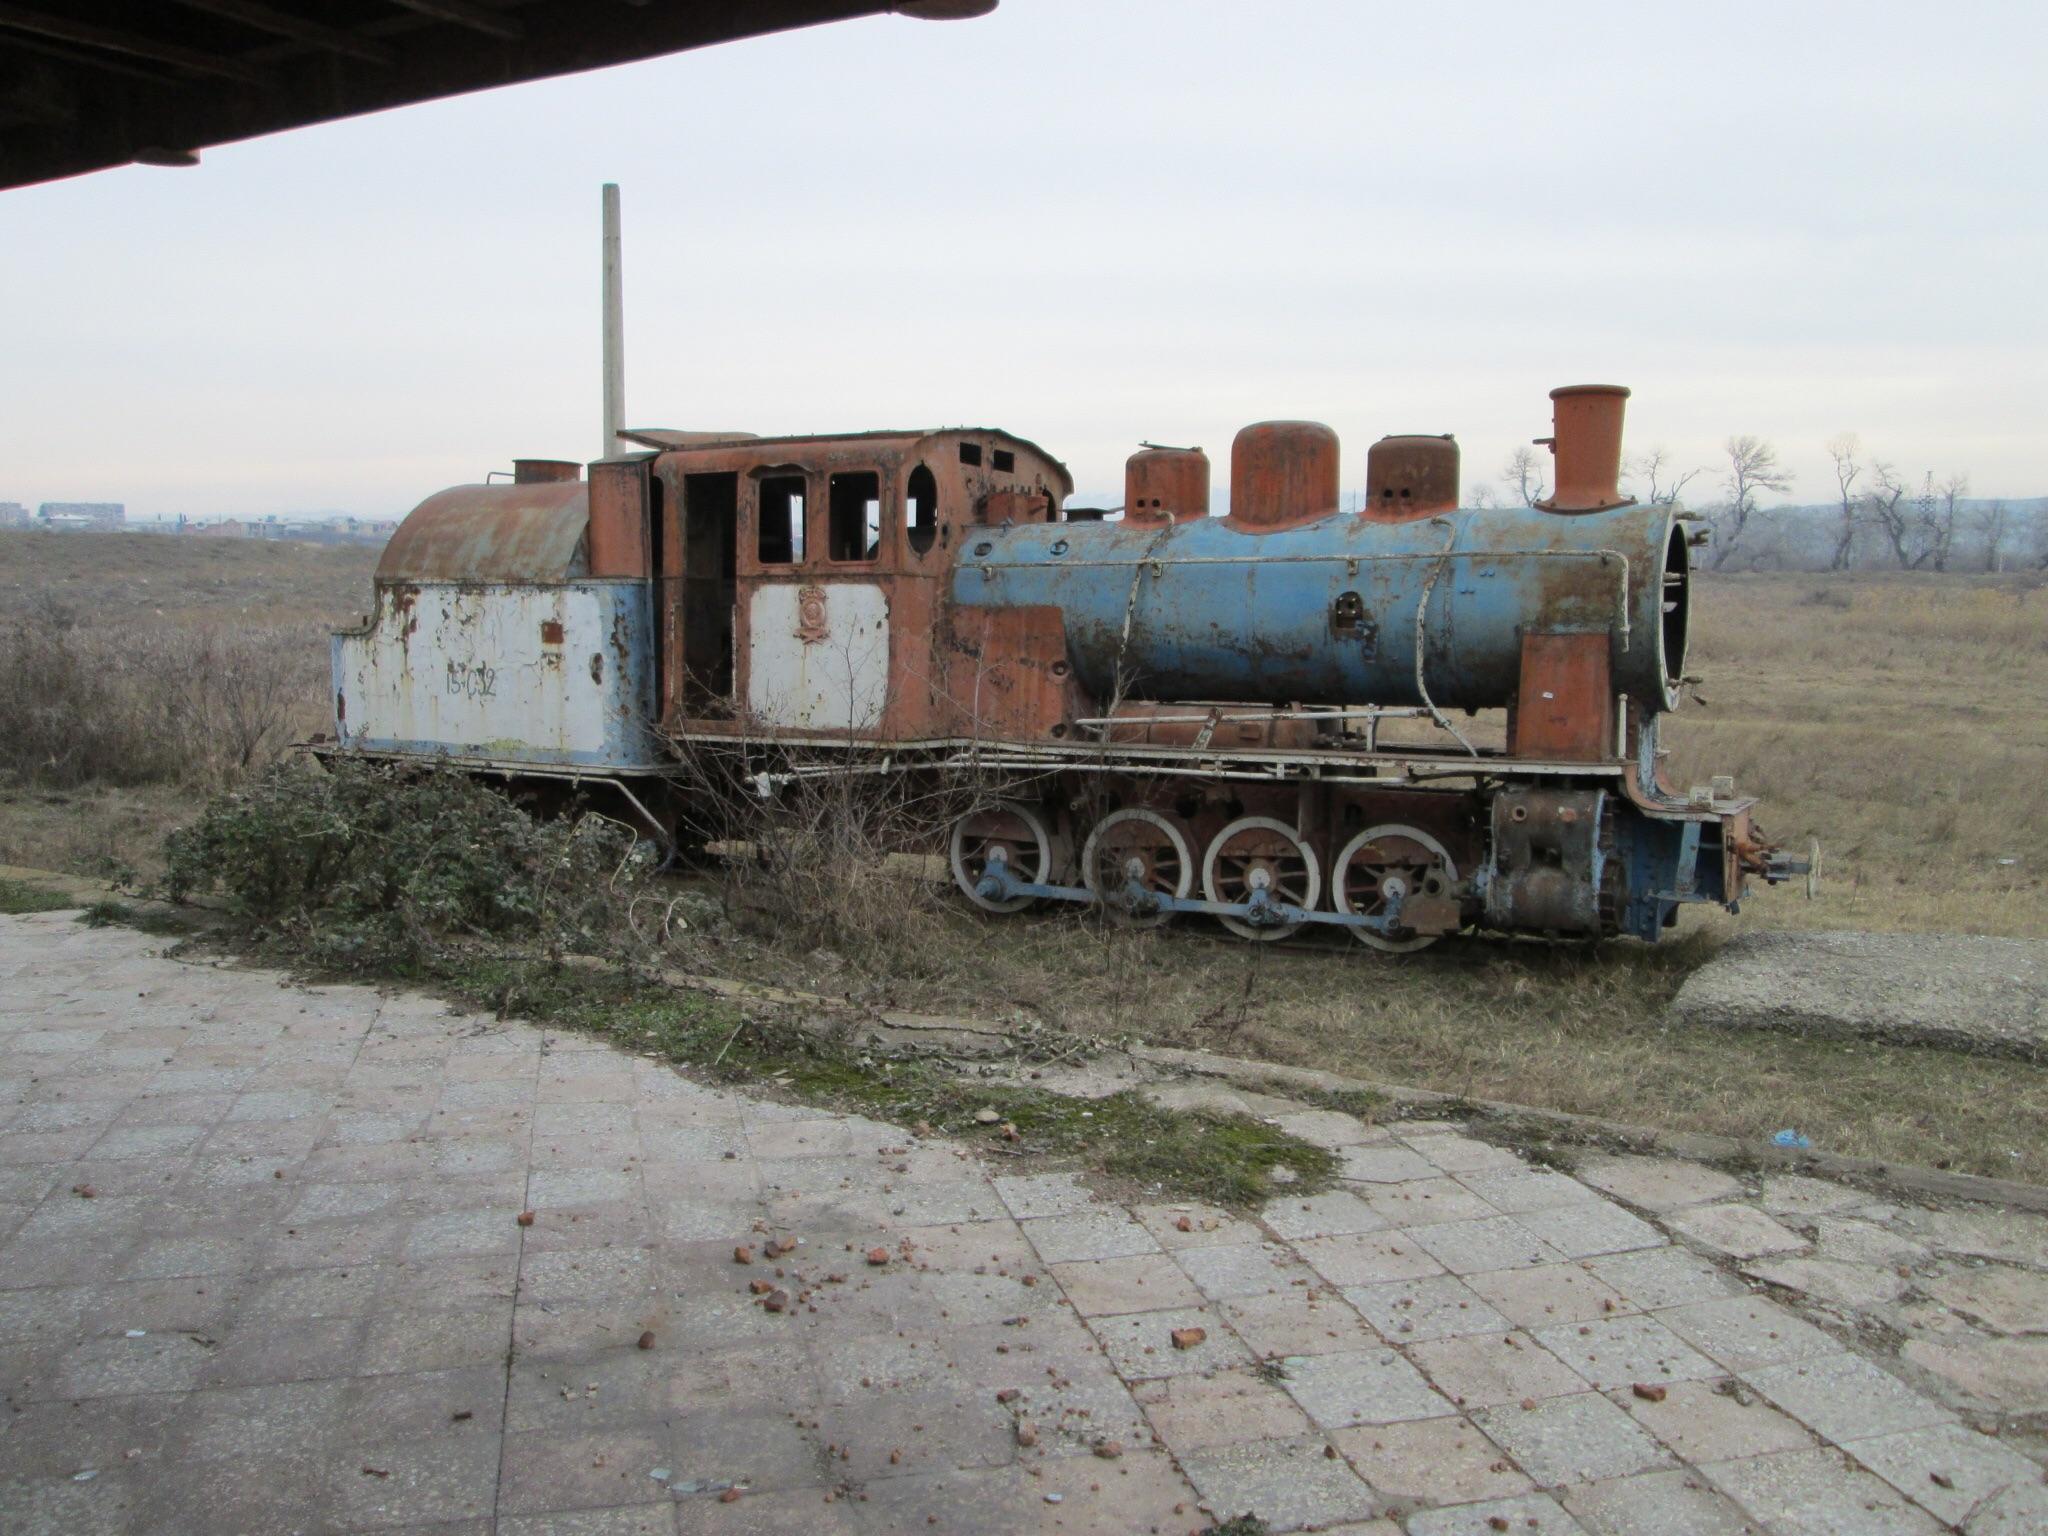 This Decrepit Old Train With Kgb Insignia Rustavi Republic Of